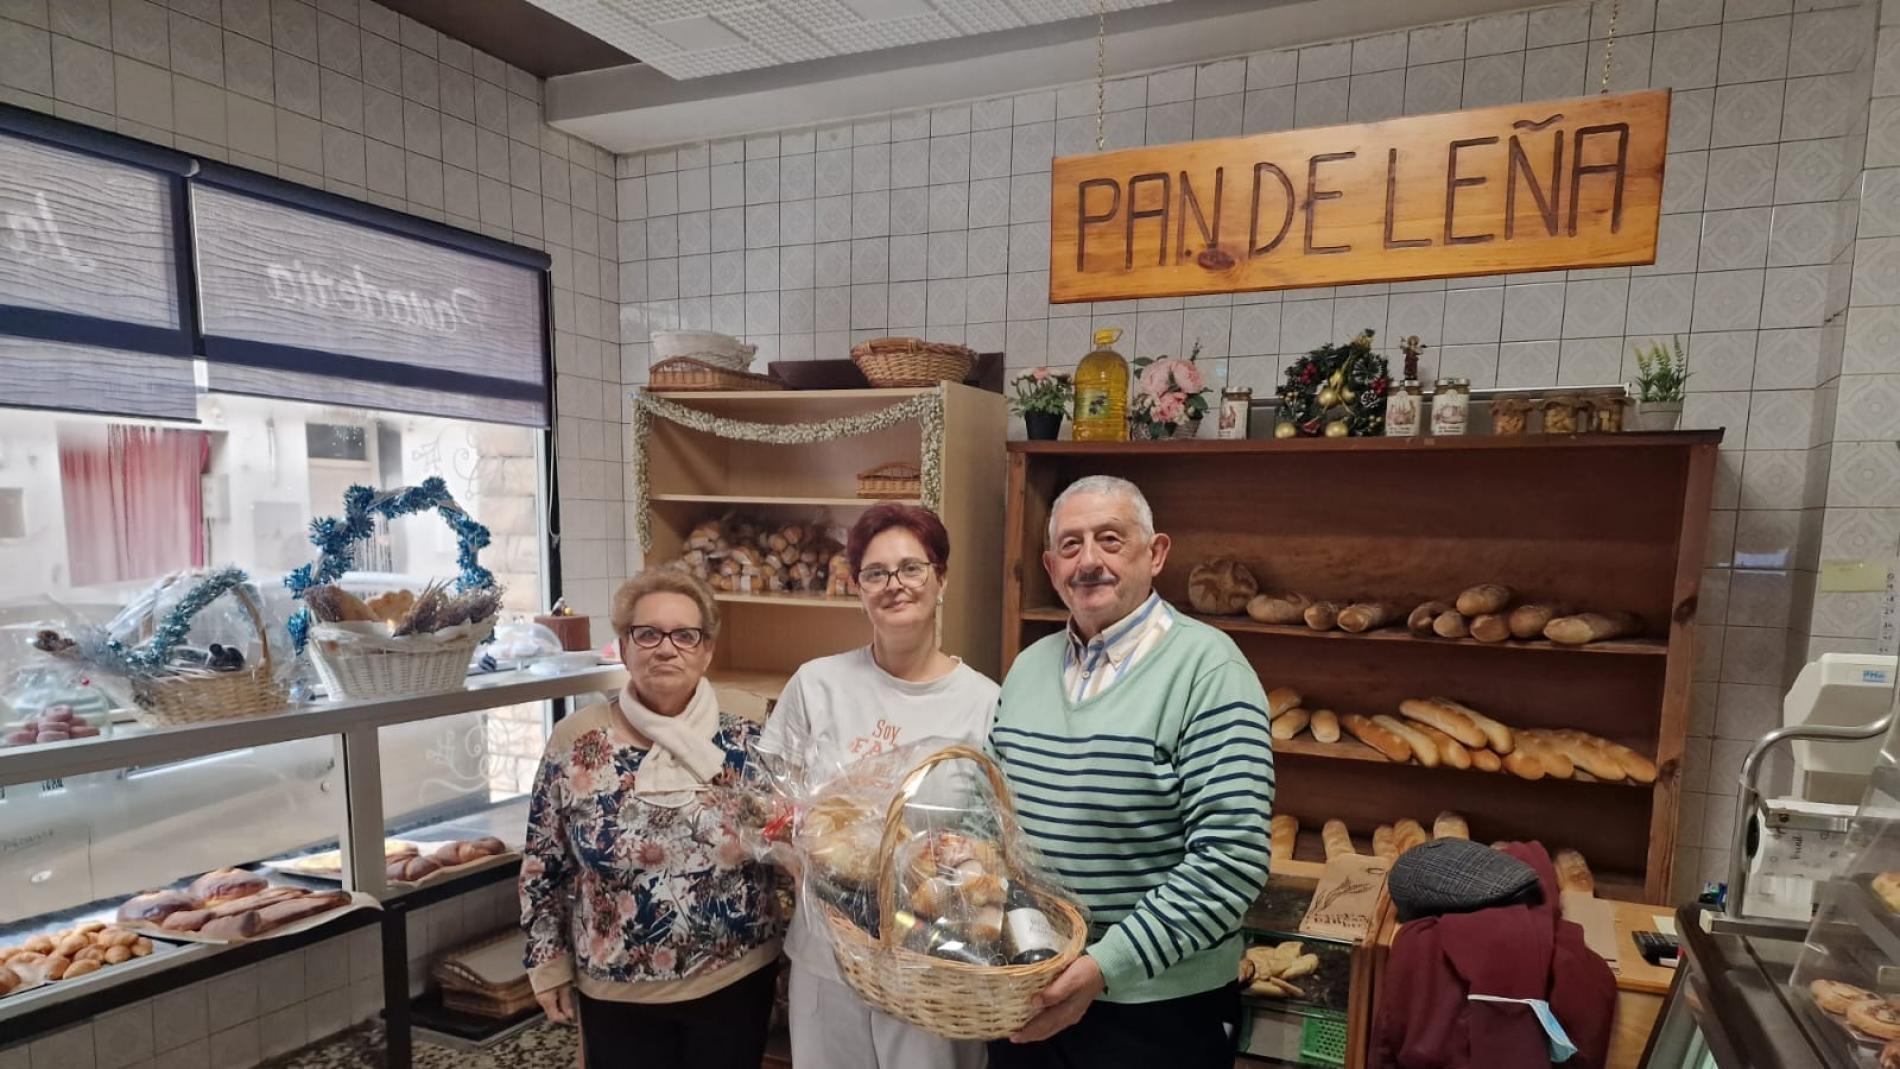 Mejores panaderías de horno de leña de Aragón - Enjoy Zaragoza